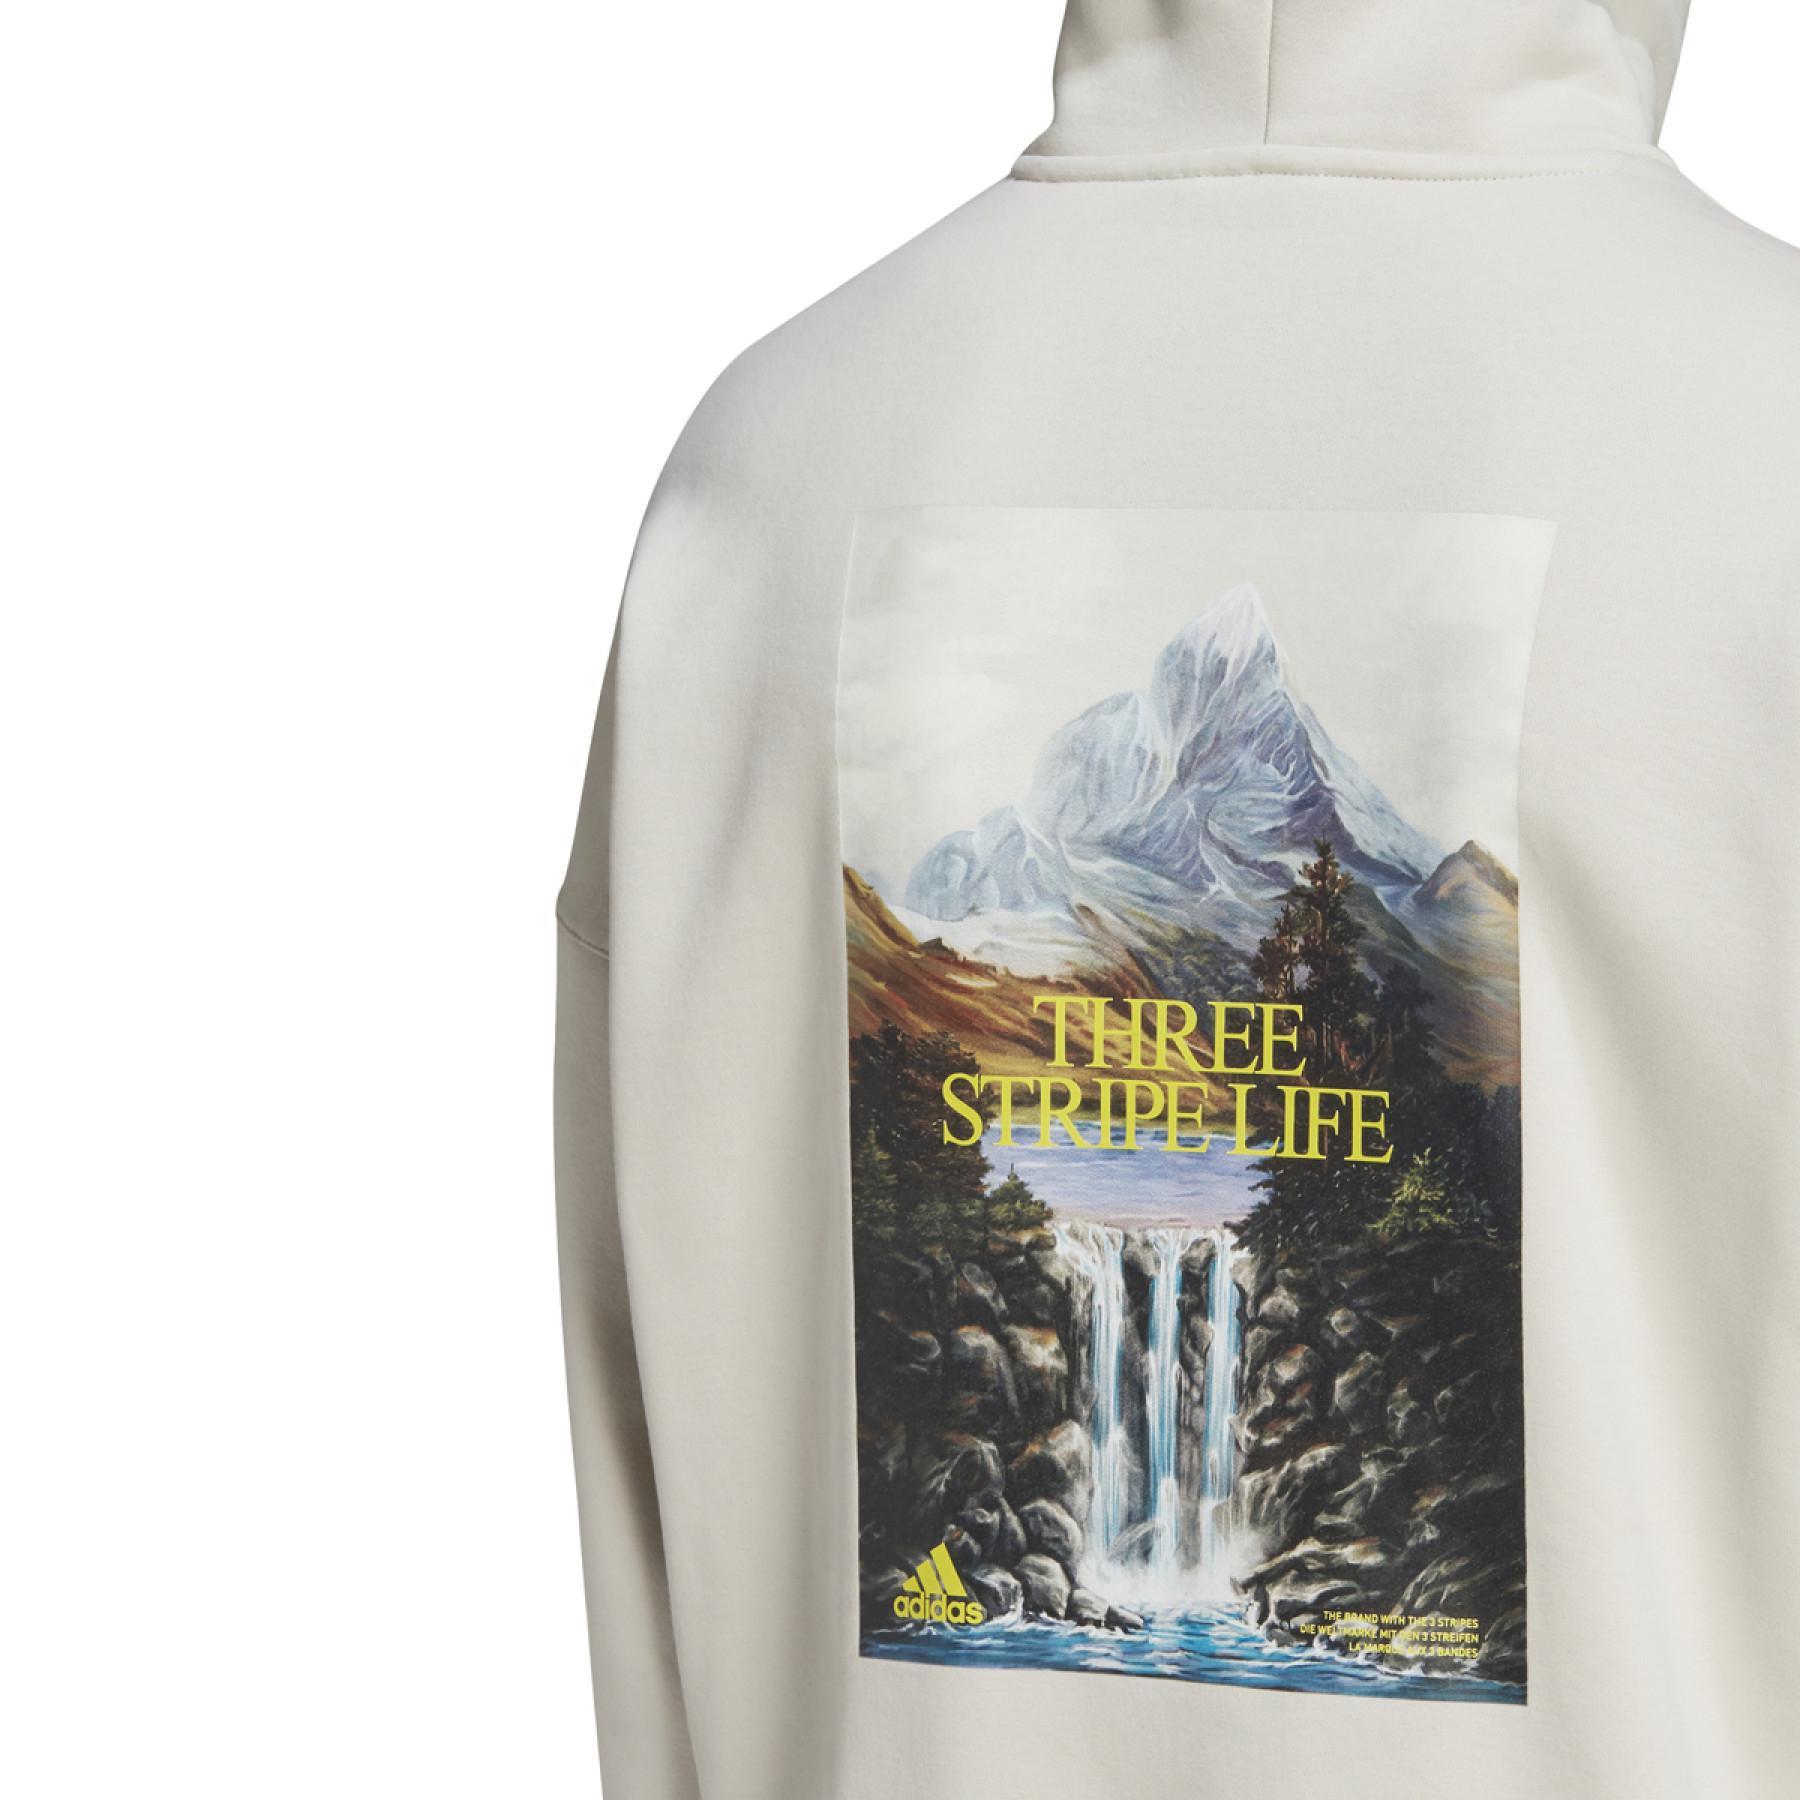 Sweatshirt mit Kapuze adidas Mountain Graphic